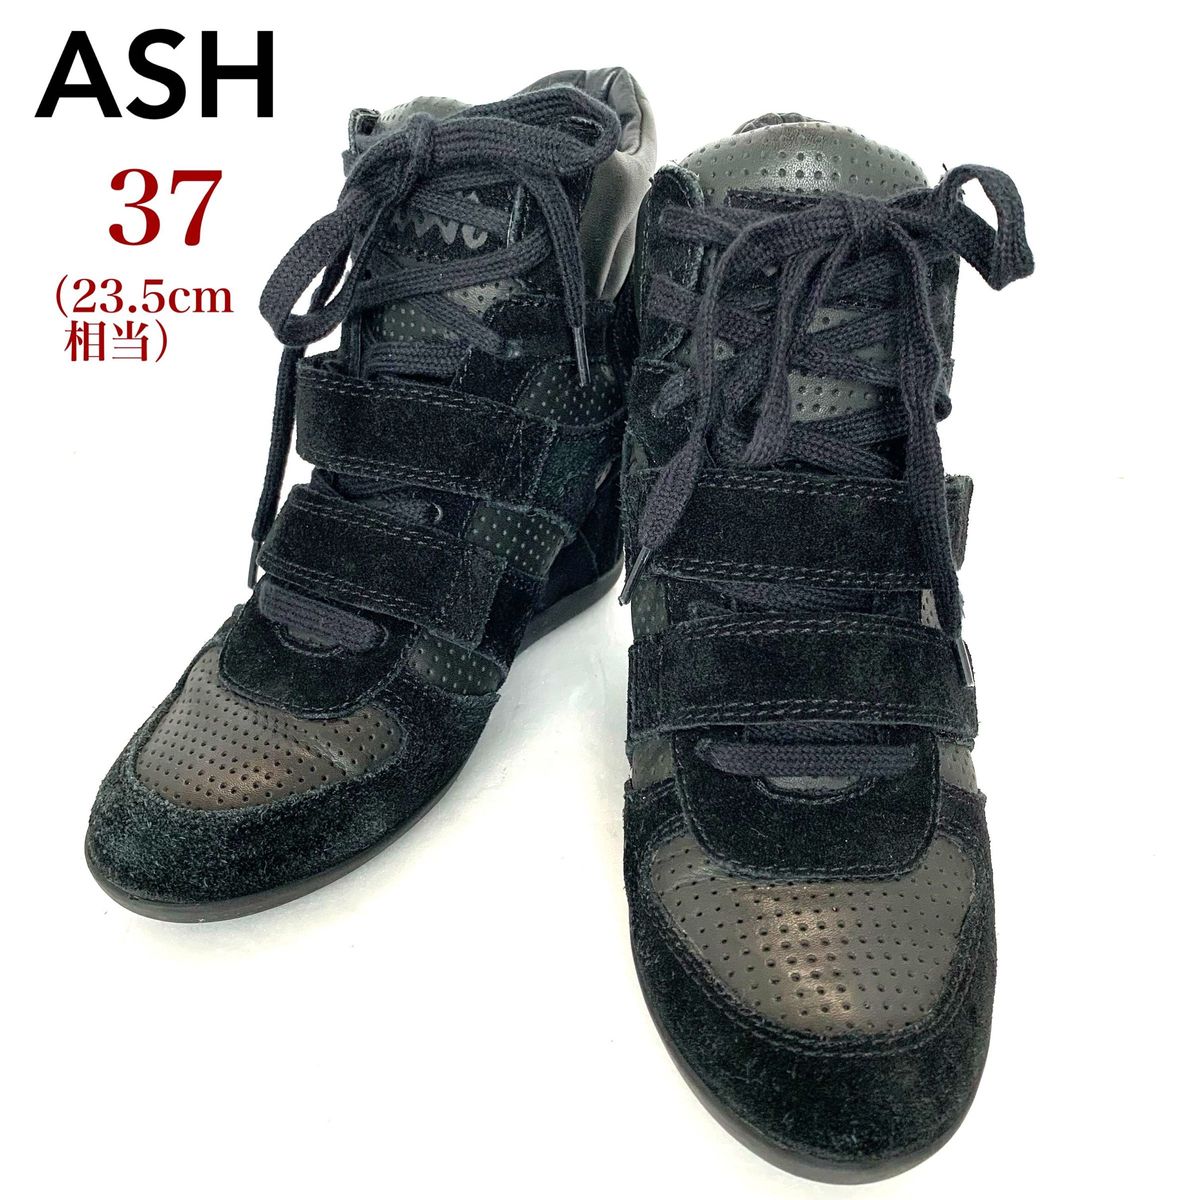 ASH アッシュ インヒールスニーカー スエードレザー ベルクロ 定番 黒 37